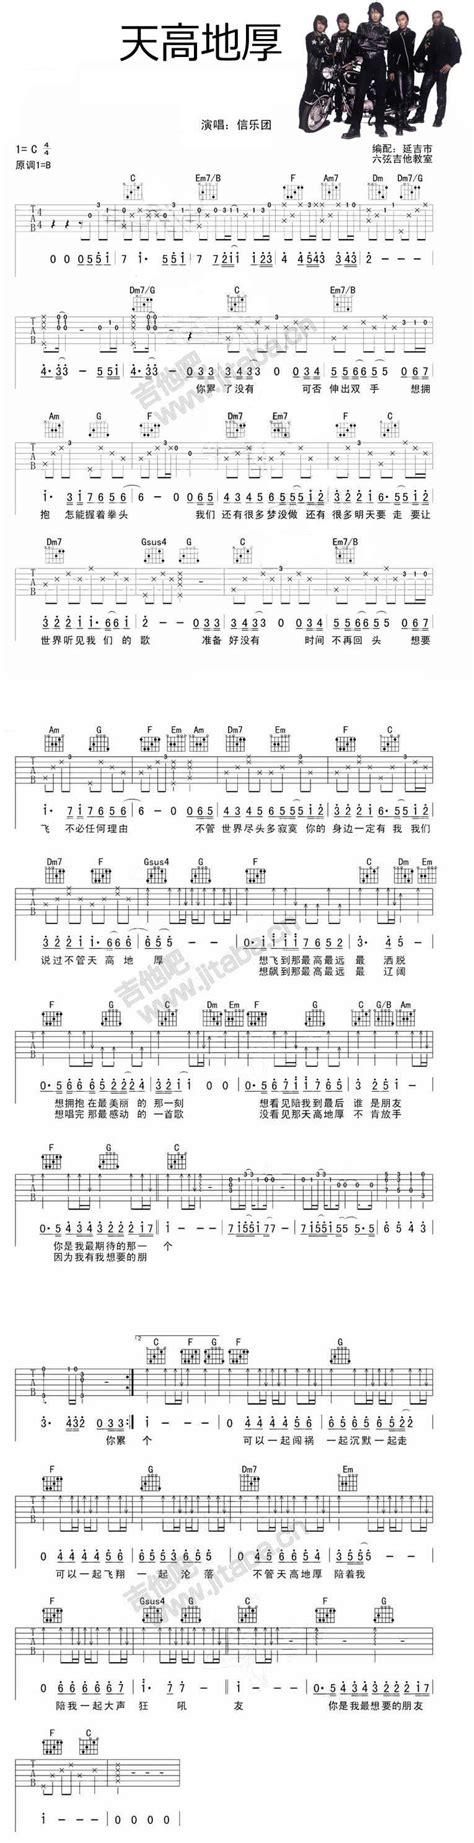 简化版《天高地厚》钢琴谱 - 初学者最易上手 - 信乐团带指法钢琴谱子 - 钢琴简谱